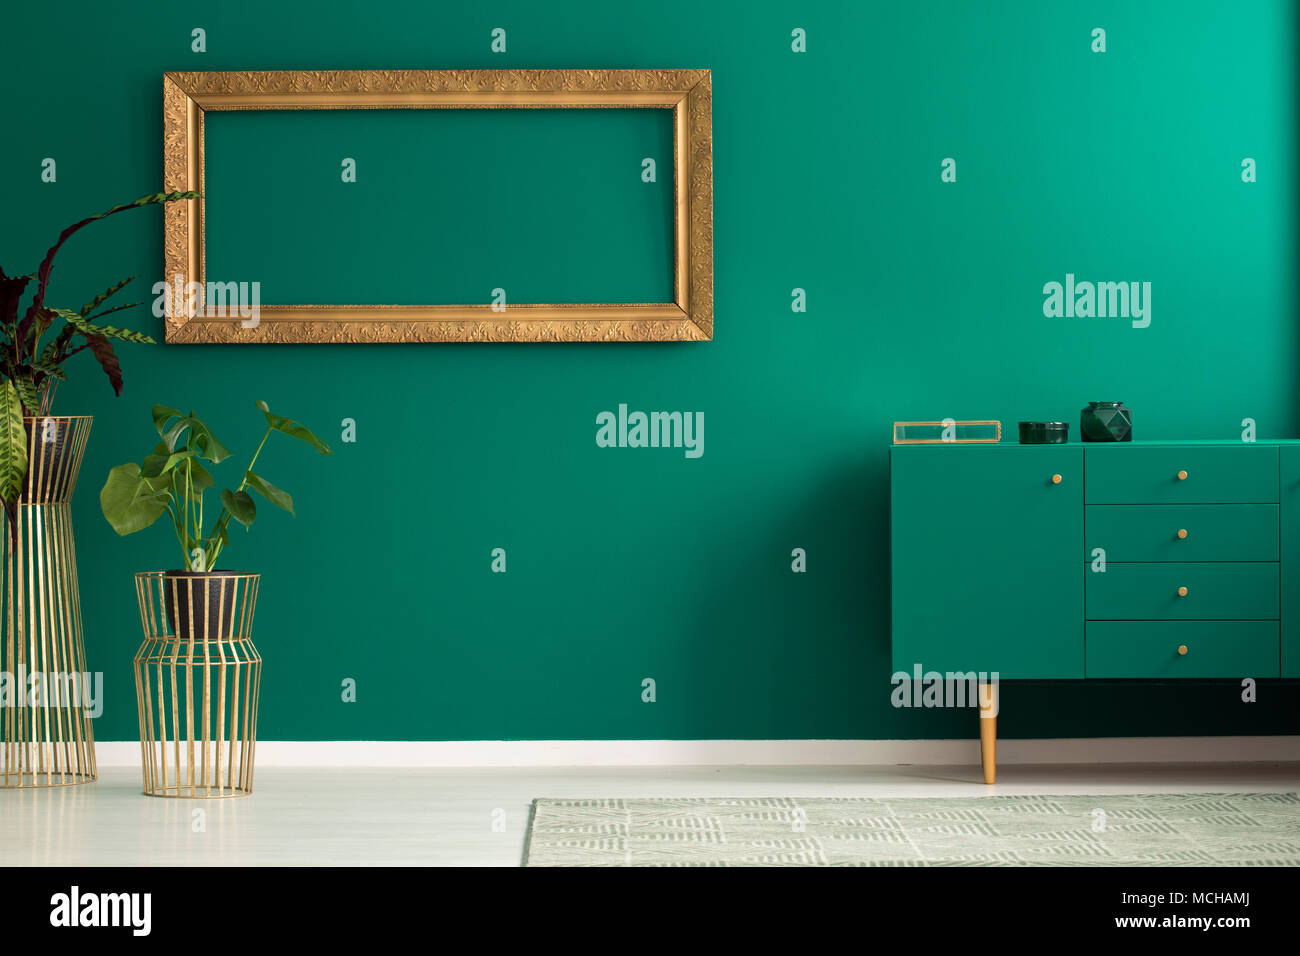 Anlage gegen die Wand mit leeren Gold frame in einfachen Wohnzimmer Einrichtung mit grünen Schrank Stockfoto